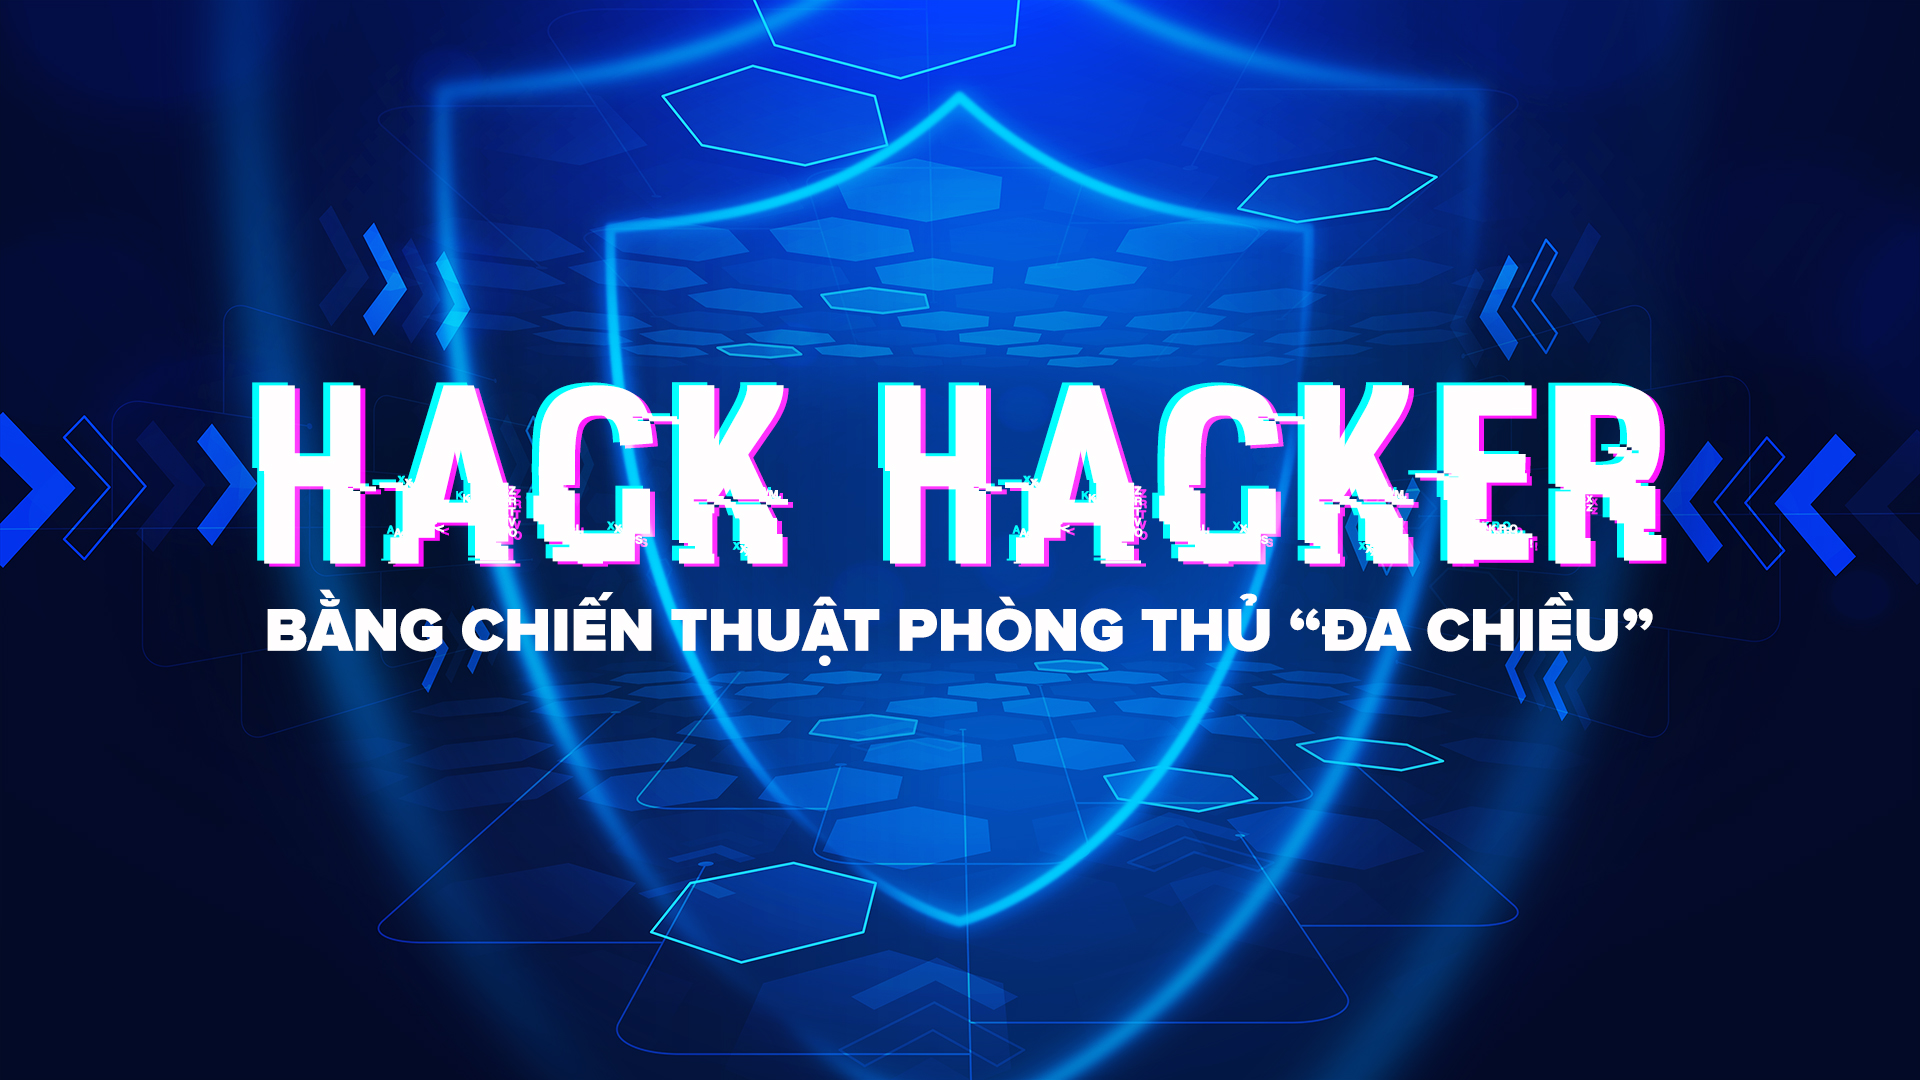 Ngày 11/07/2023, webinar “Hack hacker bằng chiến thuật phòng thủ “đa chiều” do Công ty Cổ phần An ninh mạng Việt Nam phối hợp cùng Hiệp hội Internet Việt Nam (VIA) tổ chức, đã diễn ra thành công và để lại nhiều ấn tượng tốt đẹp trong cộng đồng IT và doanh nghiệp vừa và nhỏ tại Việt Nam. Bằng những chia sẻ đầy hữu ích của các diễn giả đầy kinh nghiệm trong ngành, webinar đã thu hút sự quan tâm của đông đảo hơn 150 người tham dự. 